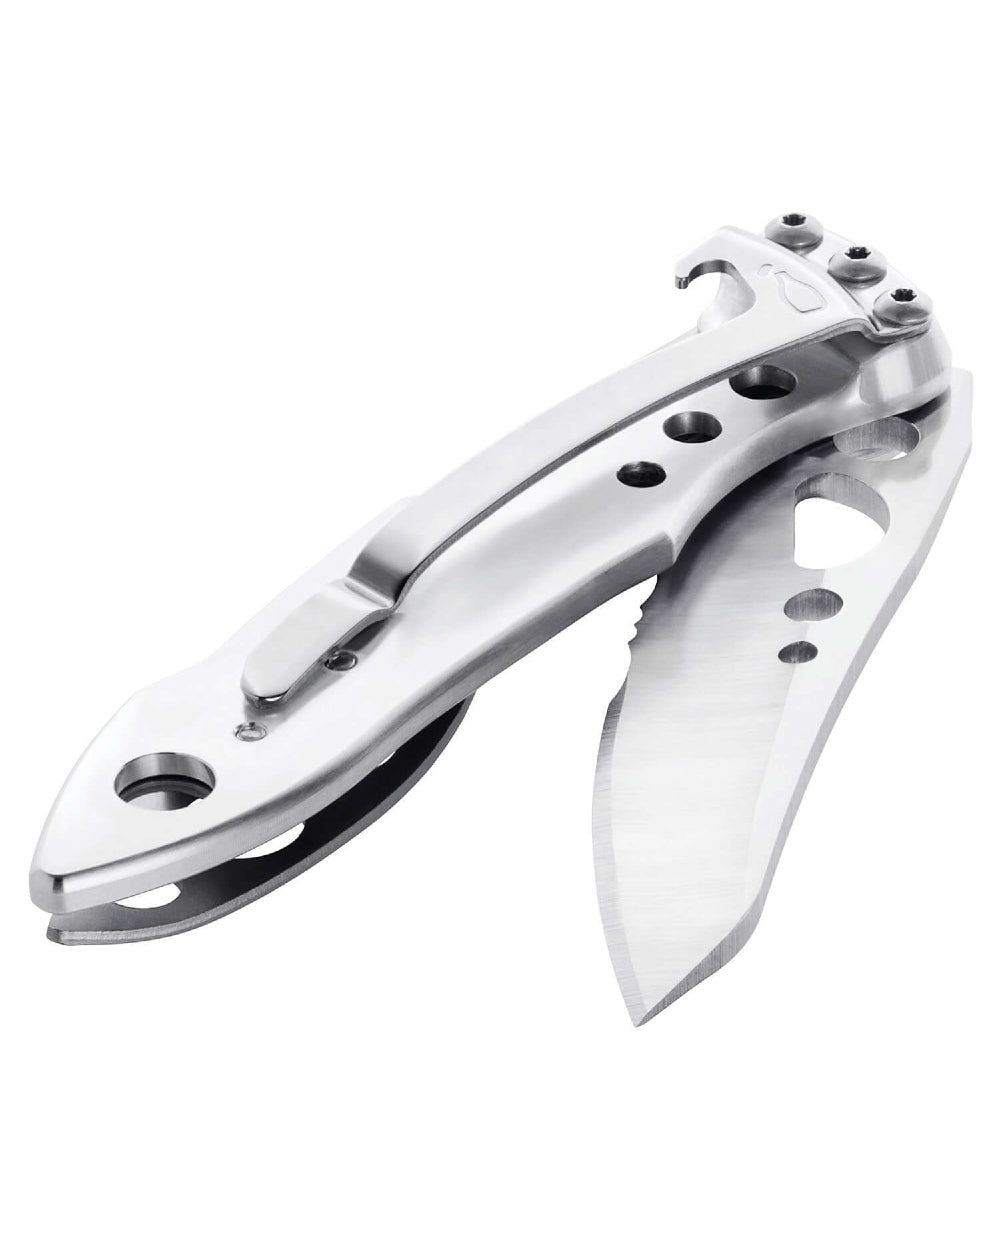 Leatherman Skeletool KBX Knife in Stainless Steel 